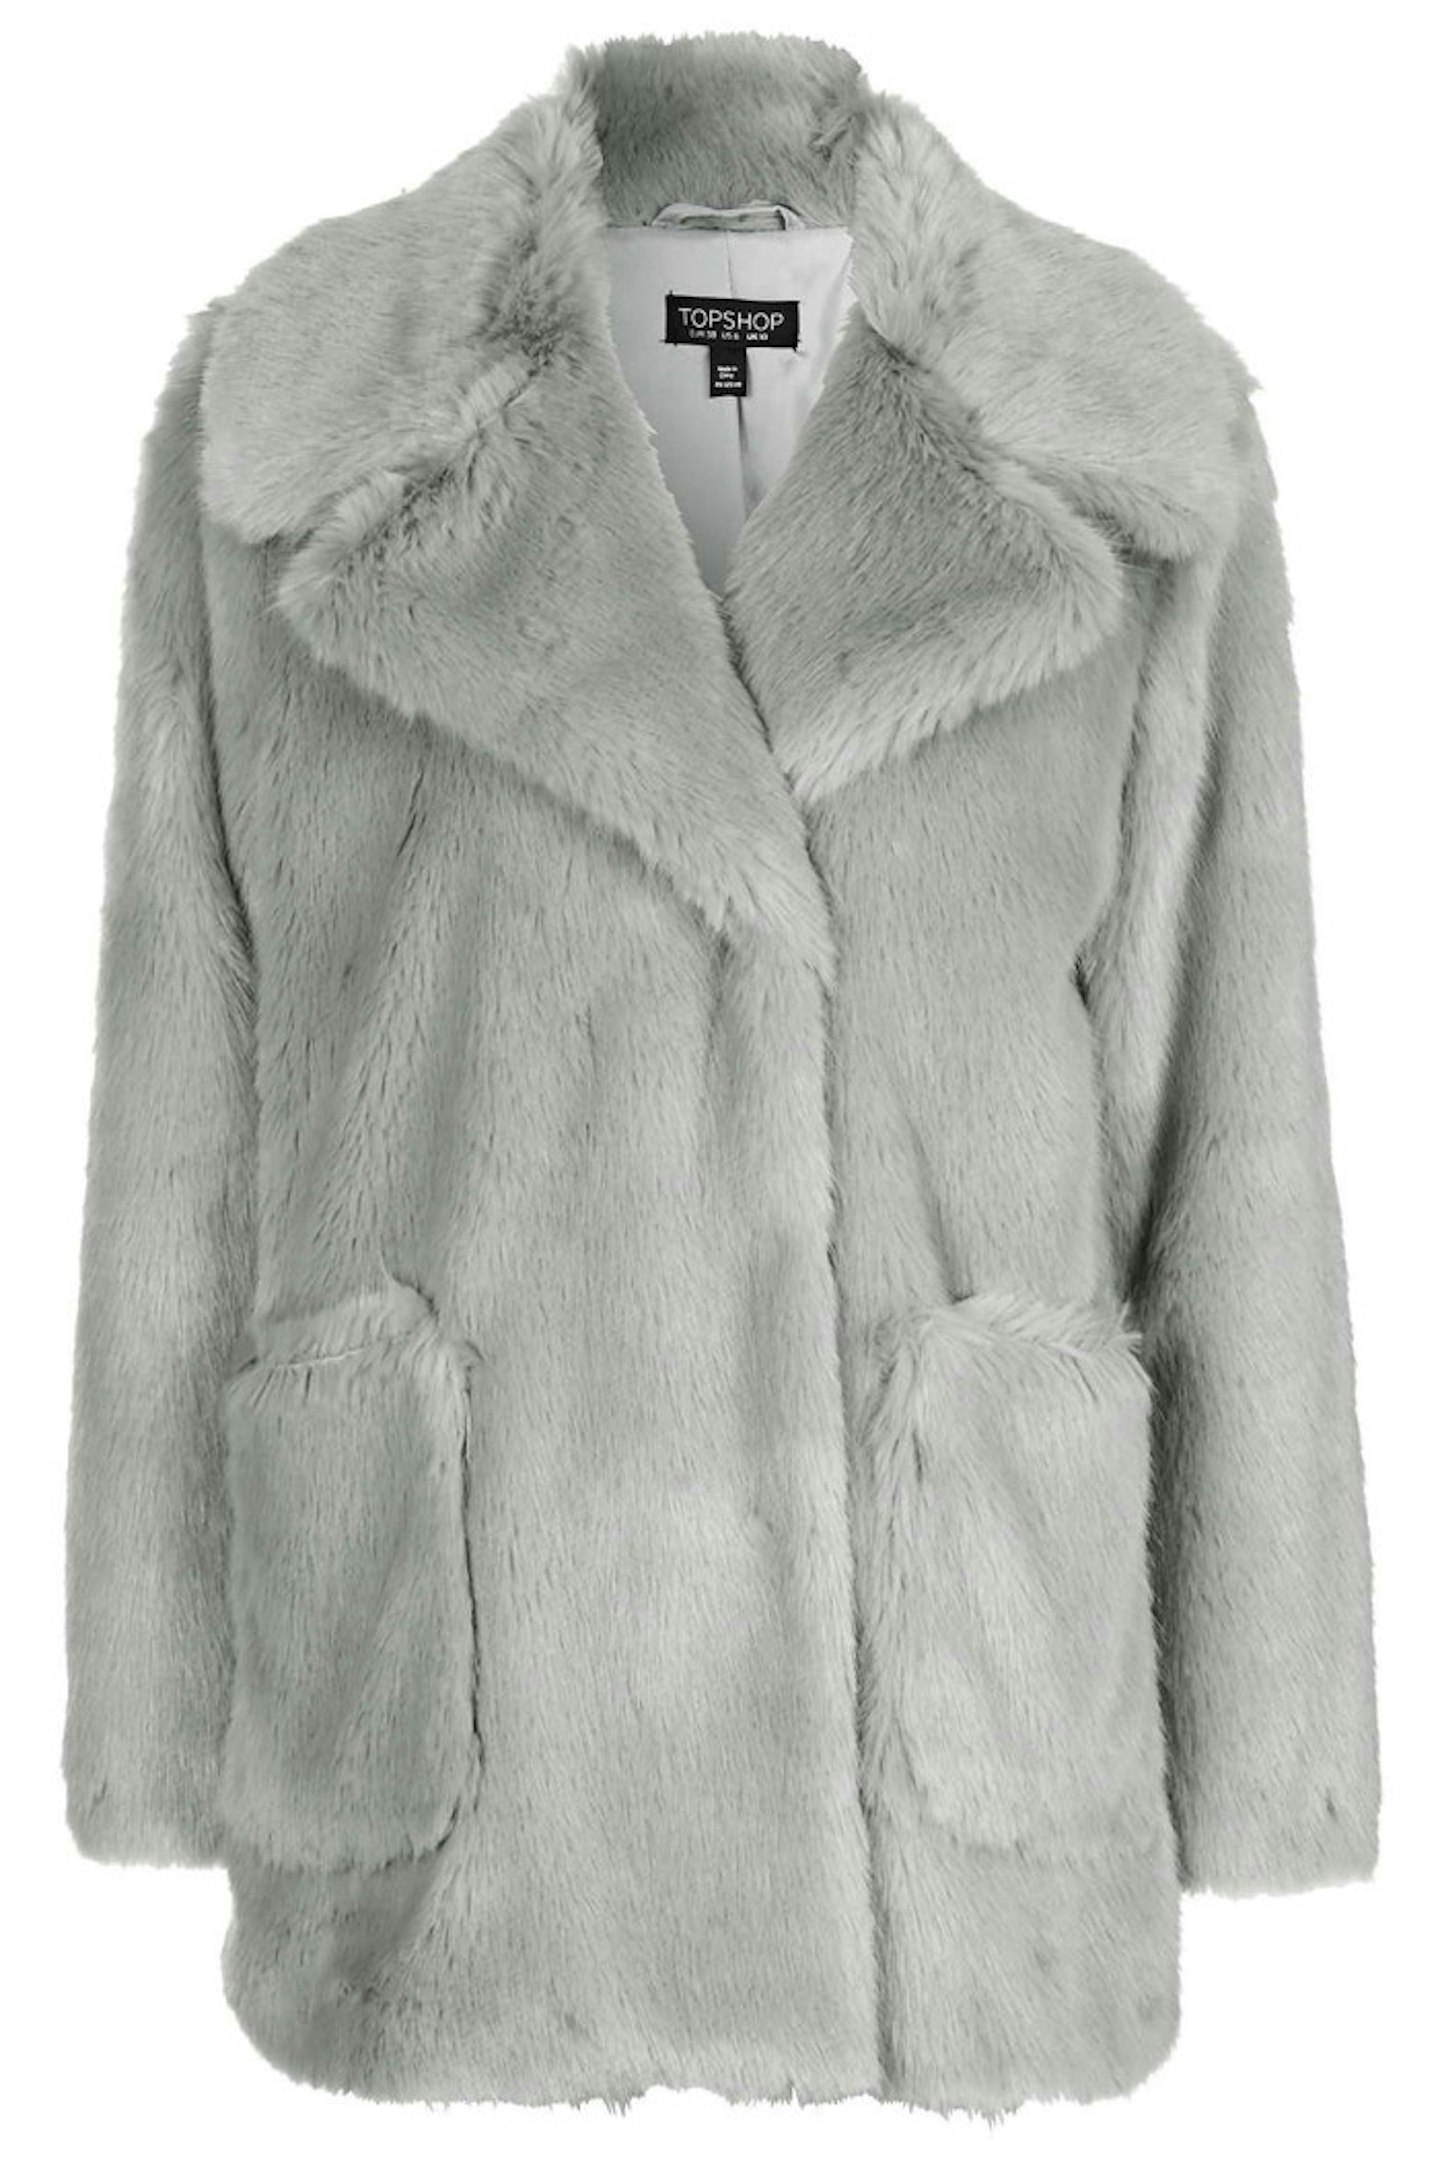 Topshop Patch Pocket Luxe Faux Fur Coat